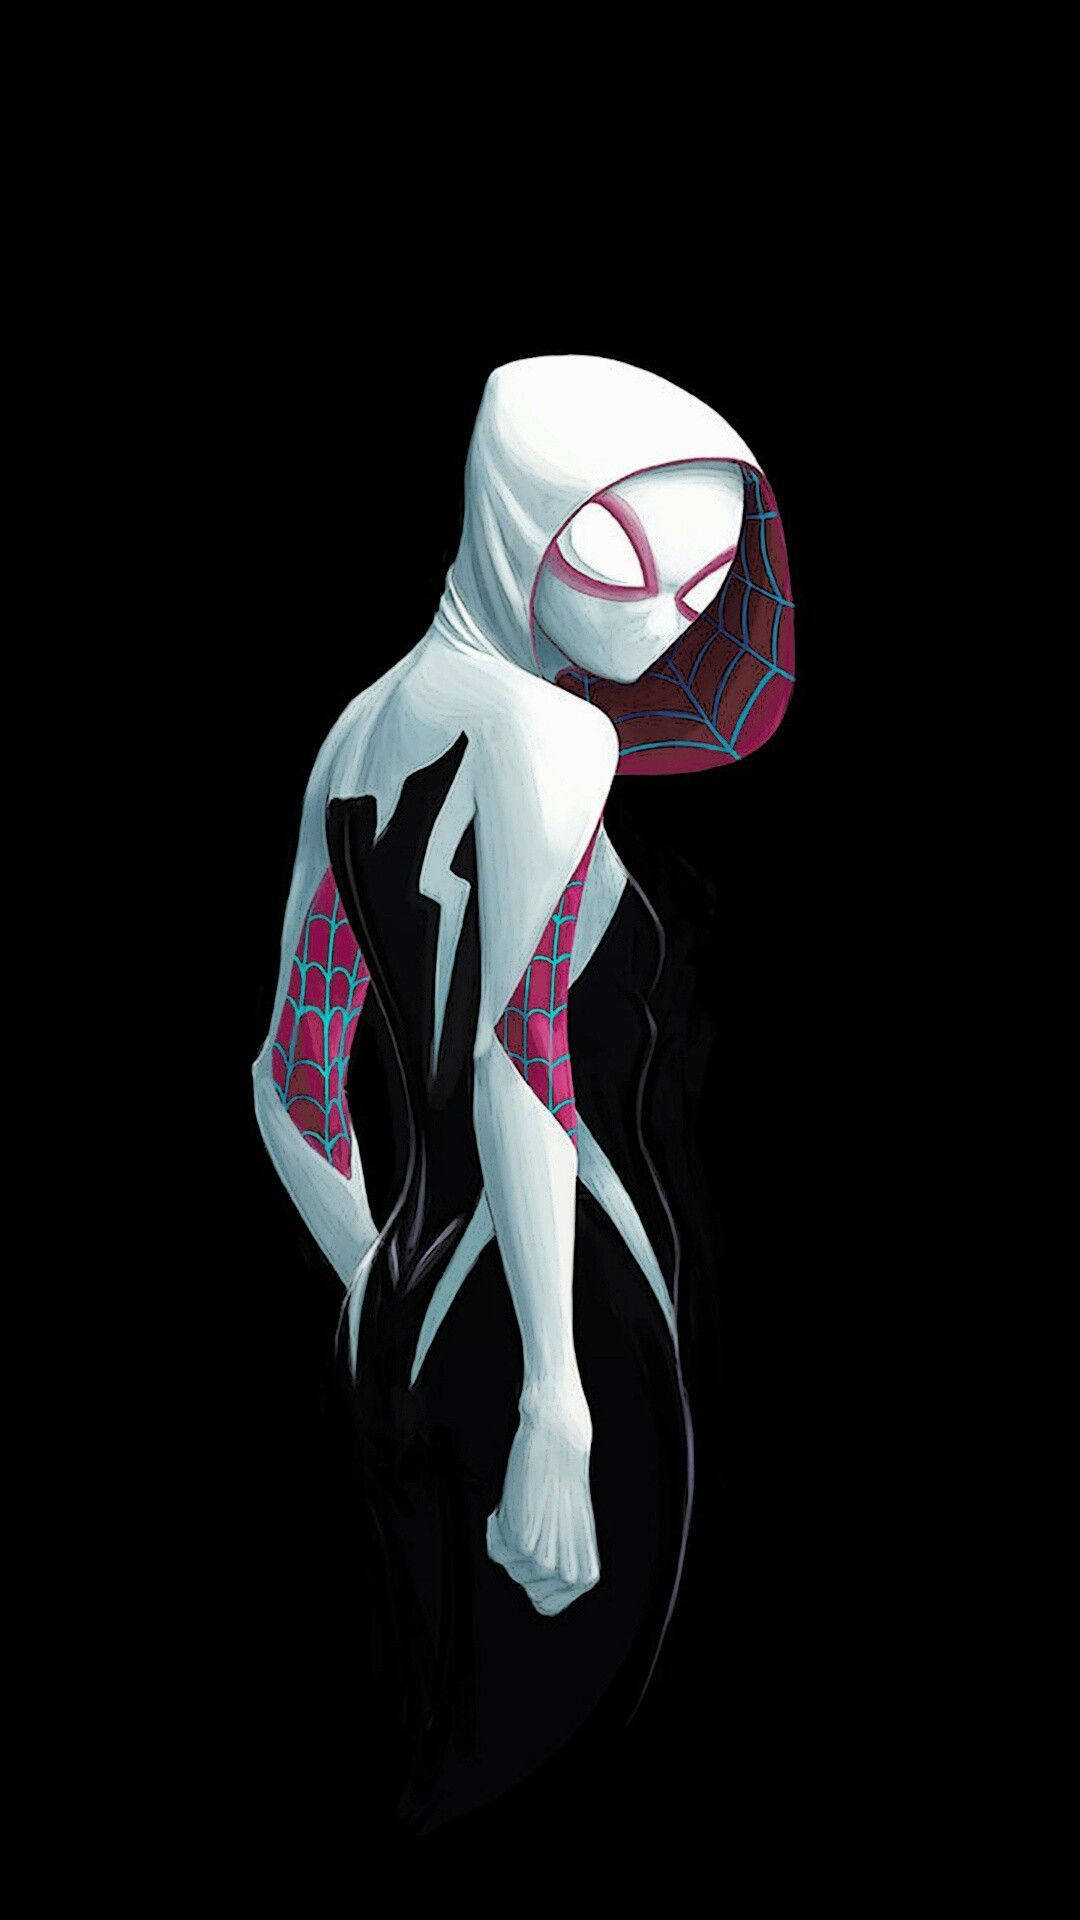 1080X1920 Spider Gwen Wallpaper and Background